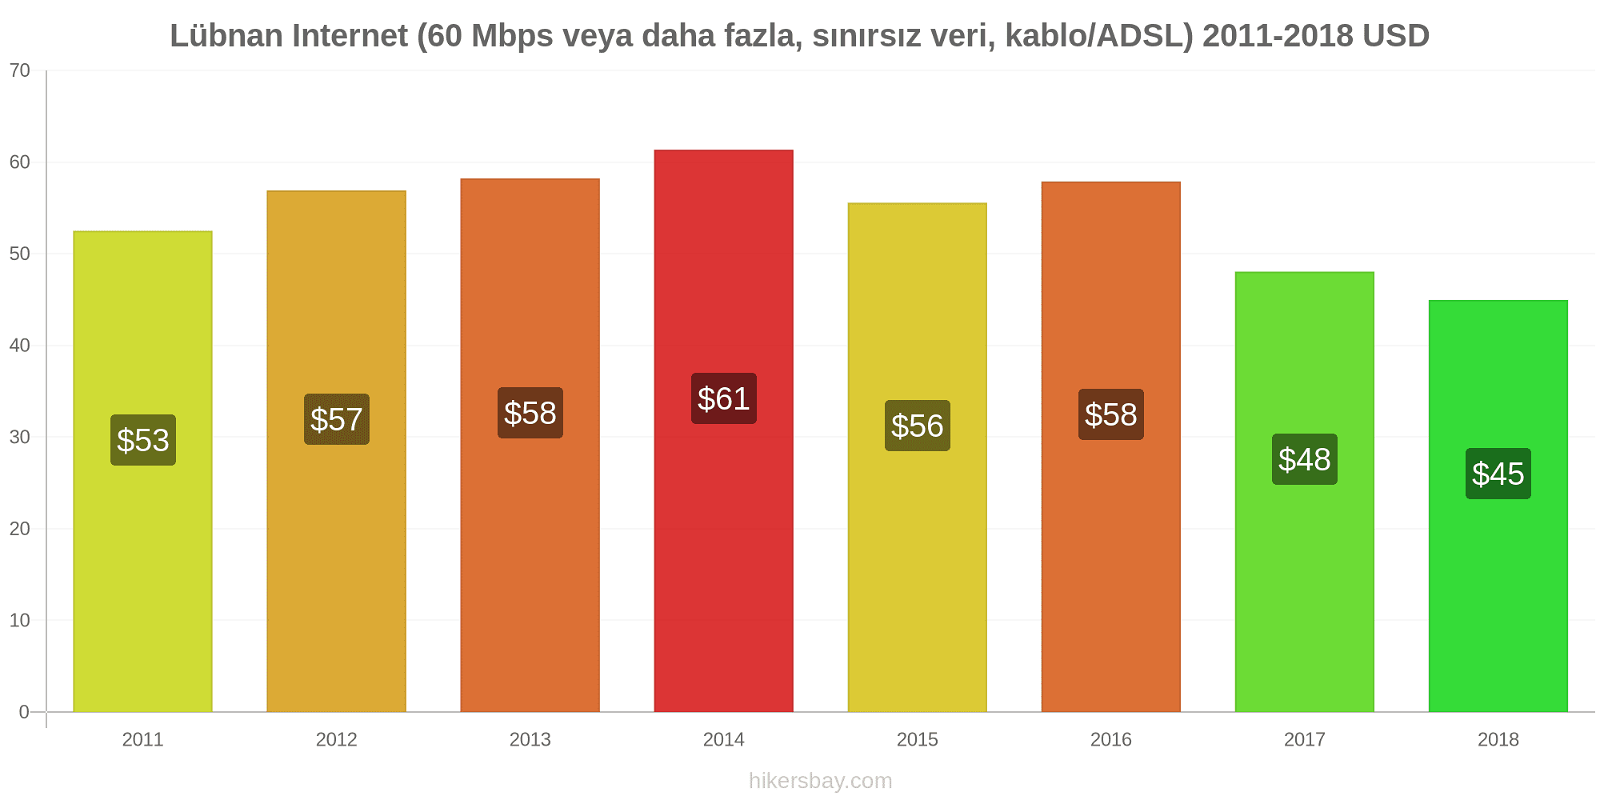 Lübnan fiyat değişiklikleri İnternet (60 Mbps veya daha fazla, sınırsız veri, kablo/ADSL) hikersbay.com